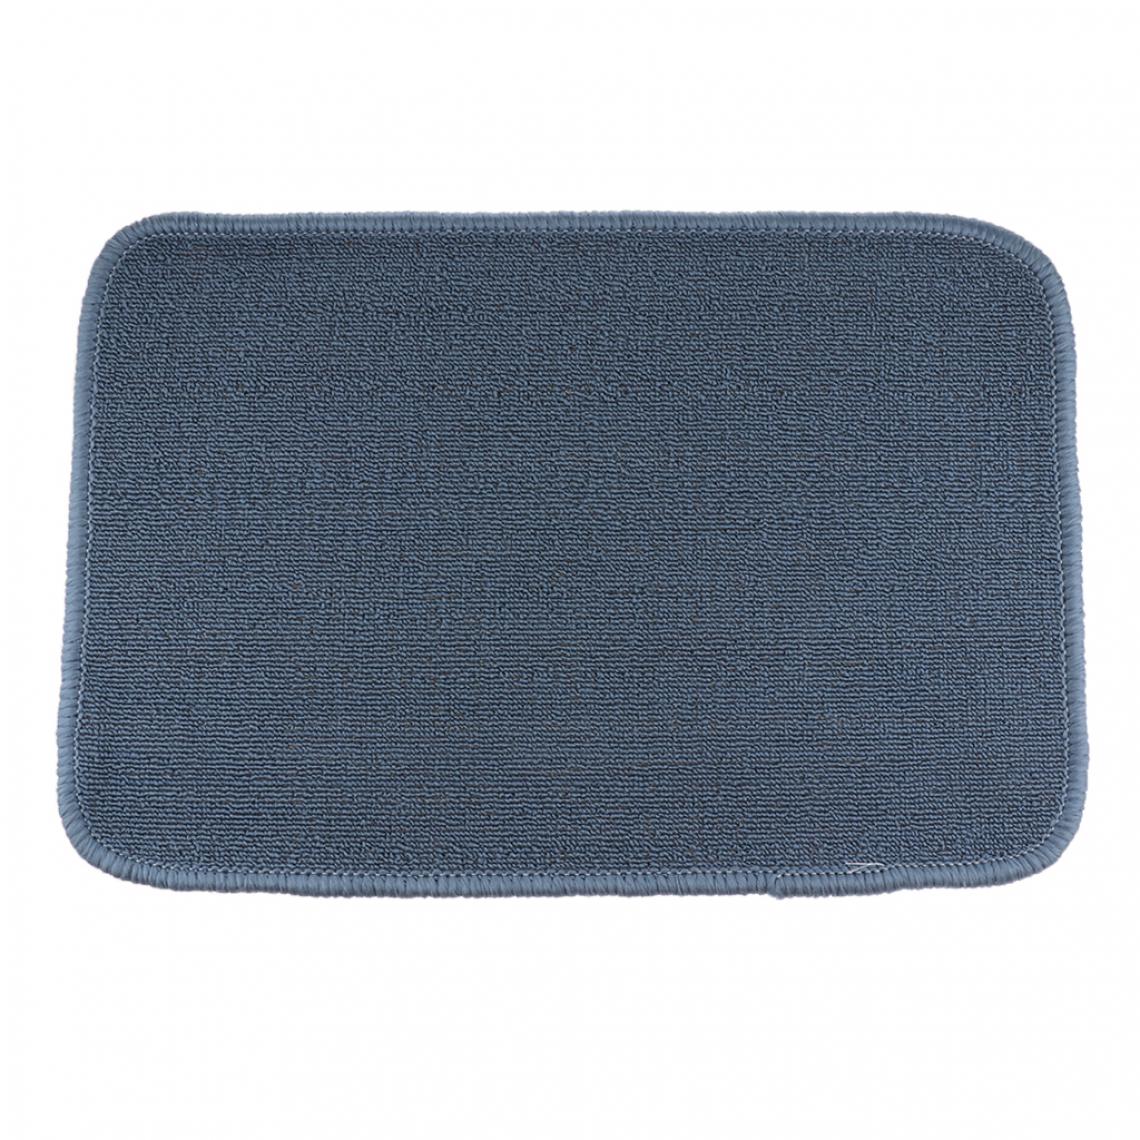 marque generique - montessori matériaux tapis de travail pour enfants tapis de jeu 110x70cm gris - Jeux éducatifs